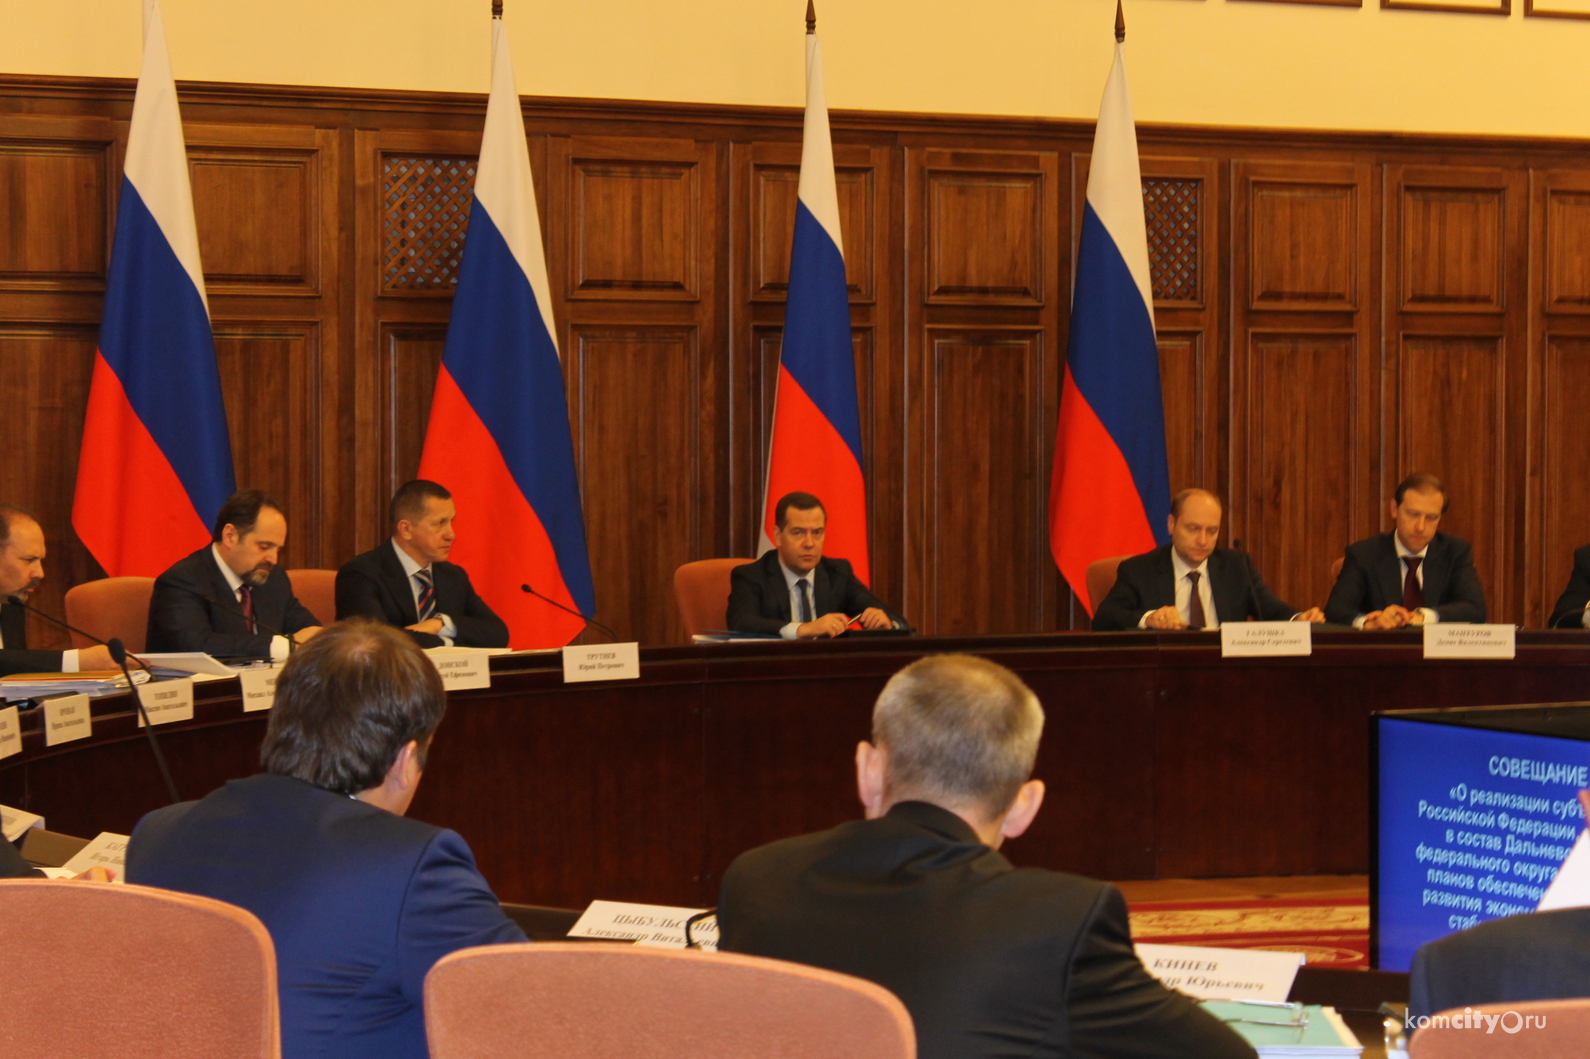 Дмитрий Медведев на совещании в Хабаровске потребовал закрыть проблему выплат подтопленцам